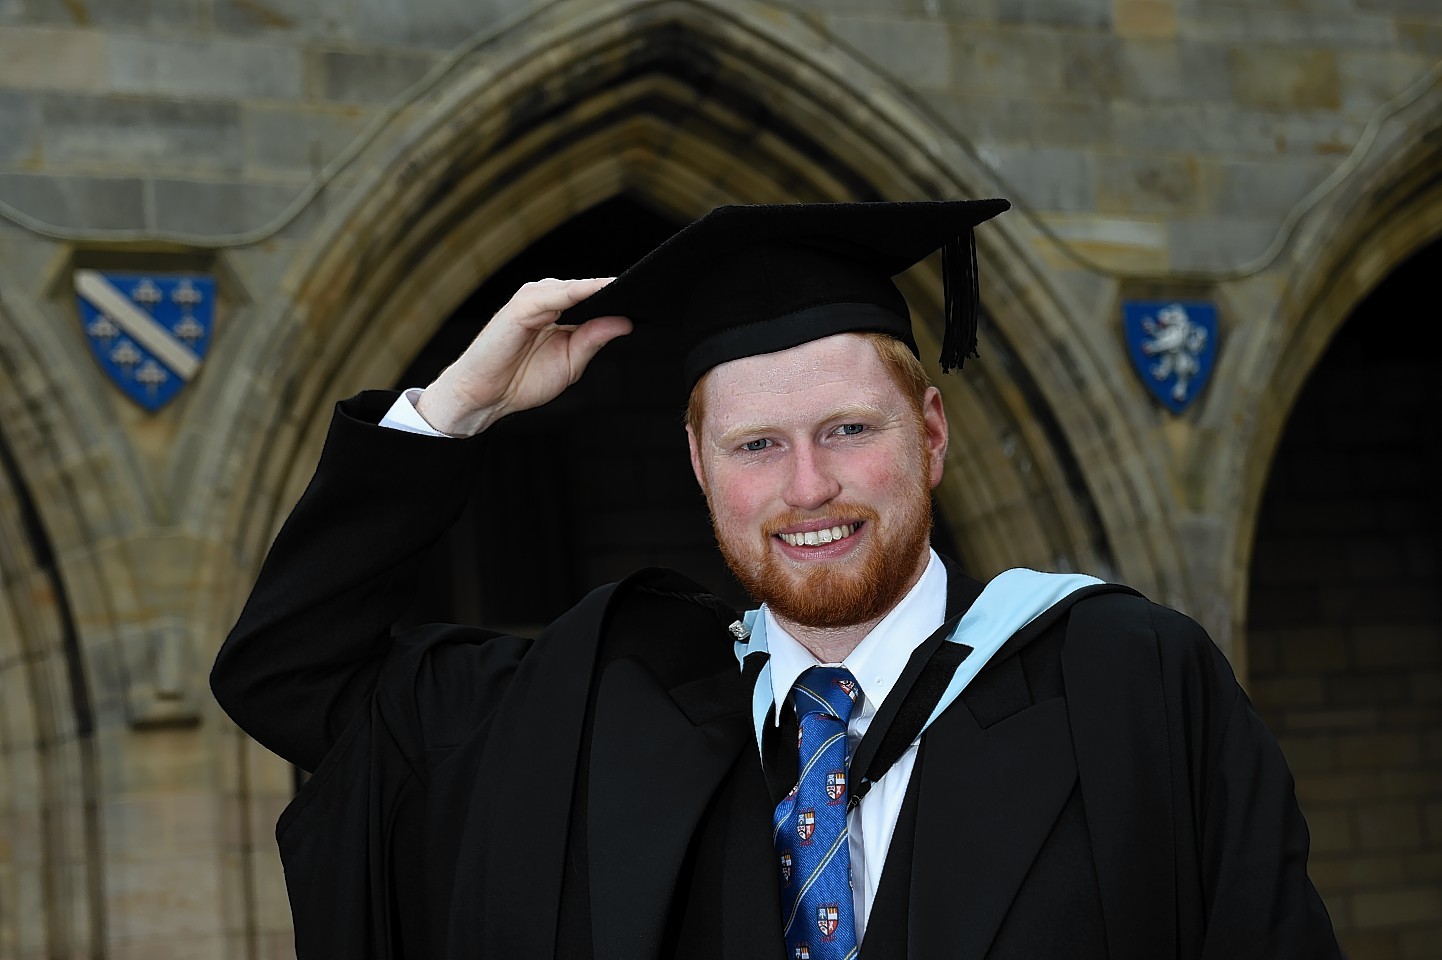 Ewen Reid graduates from Aberdeen University